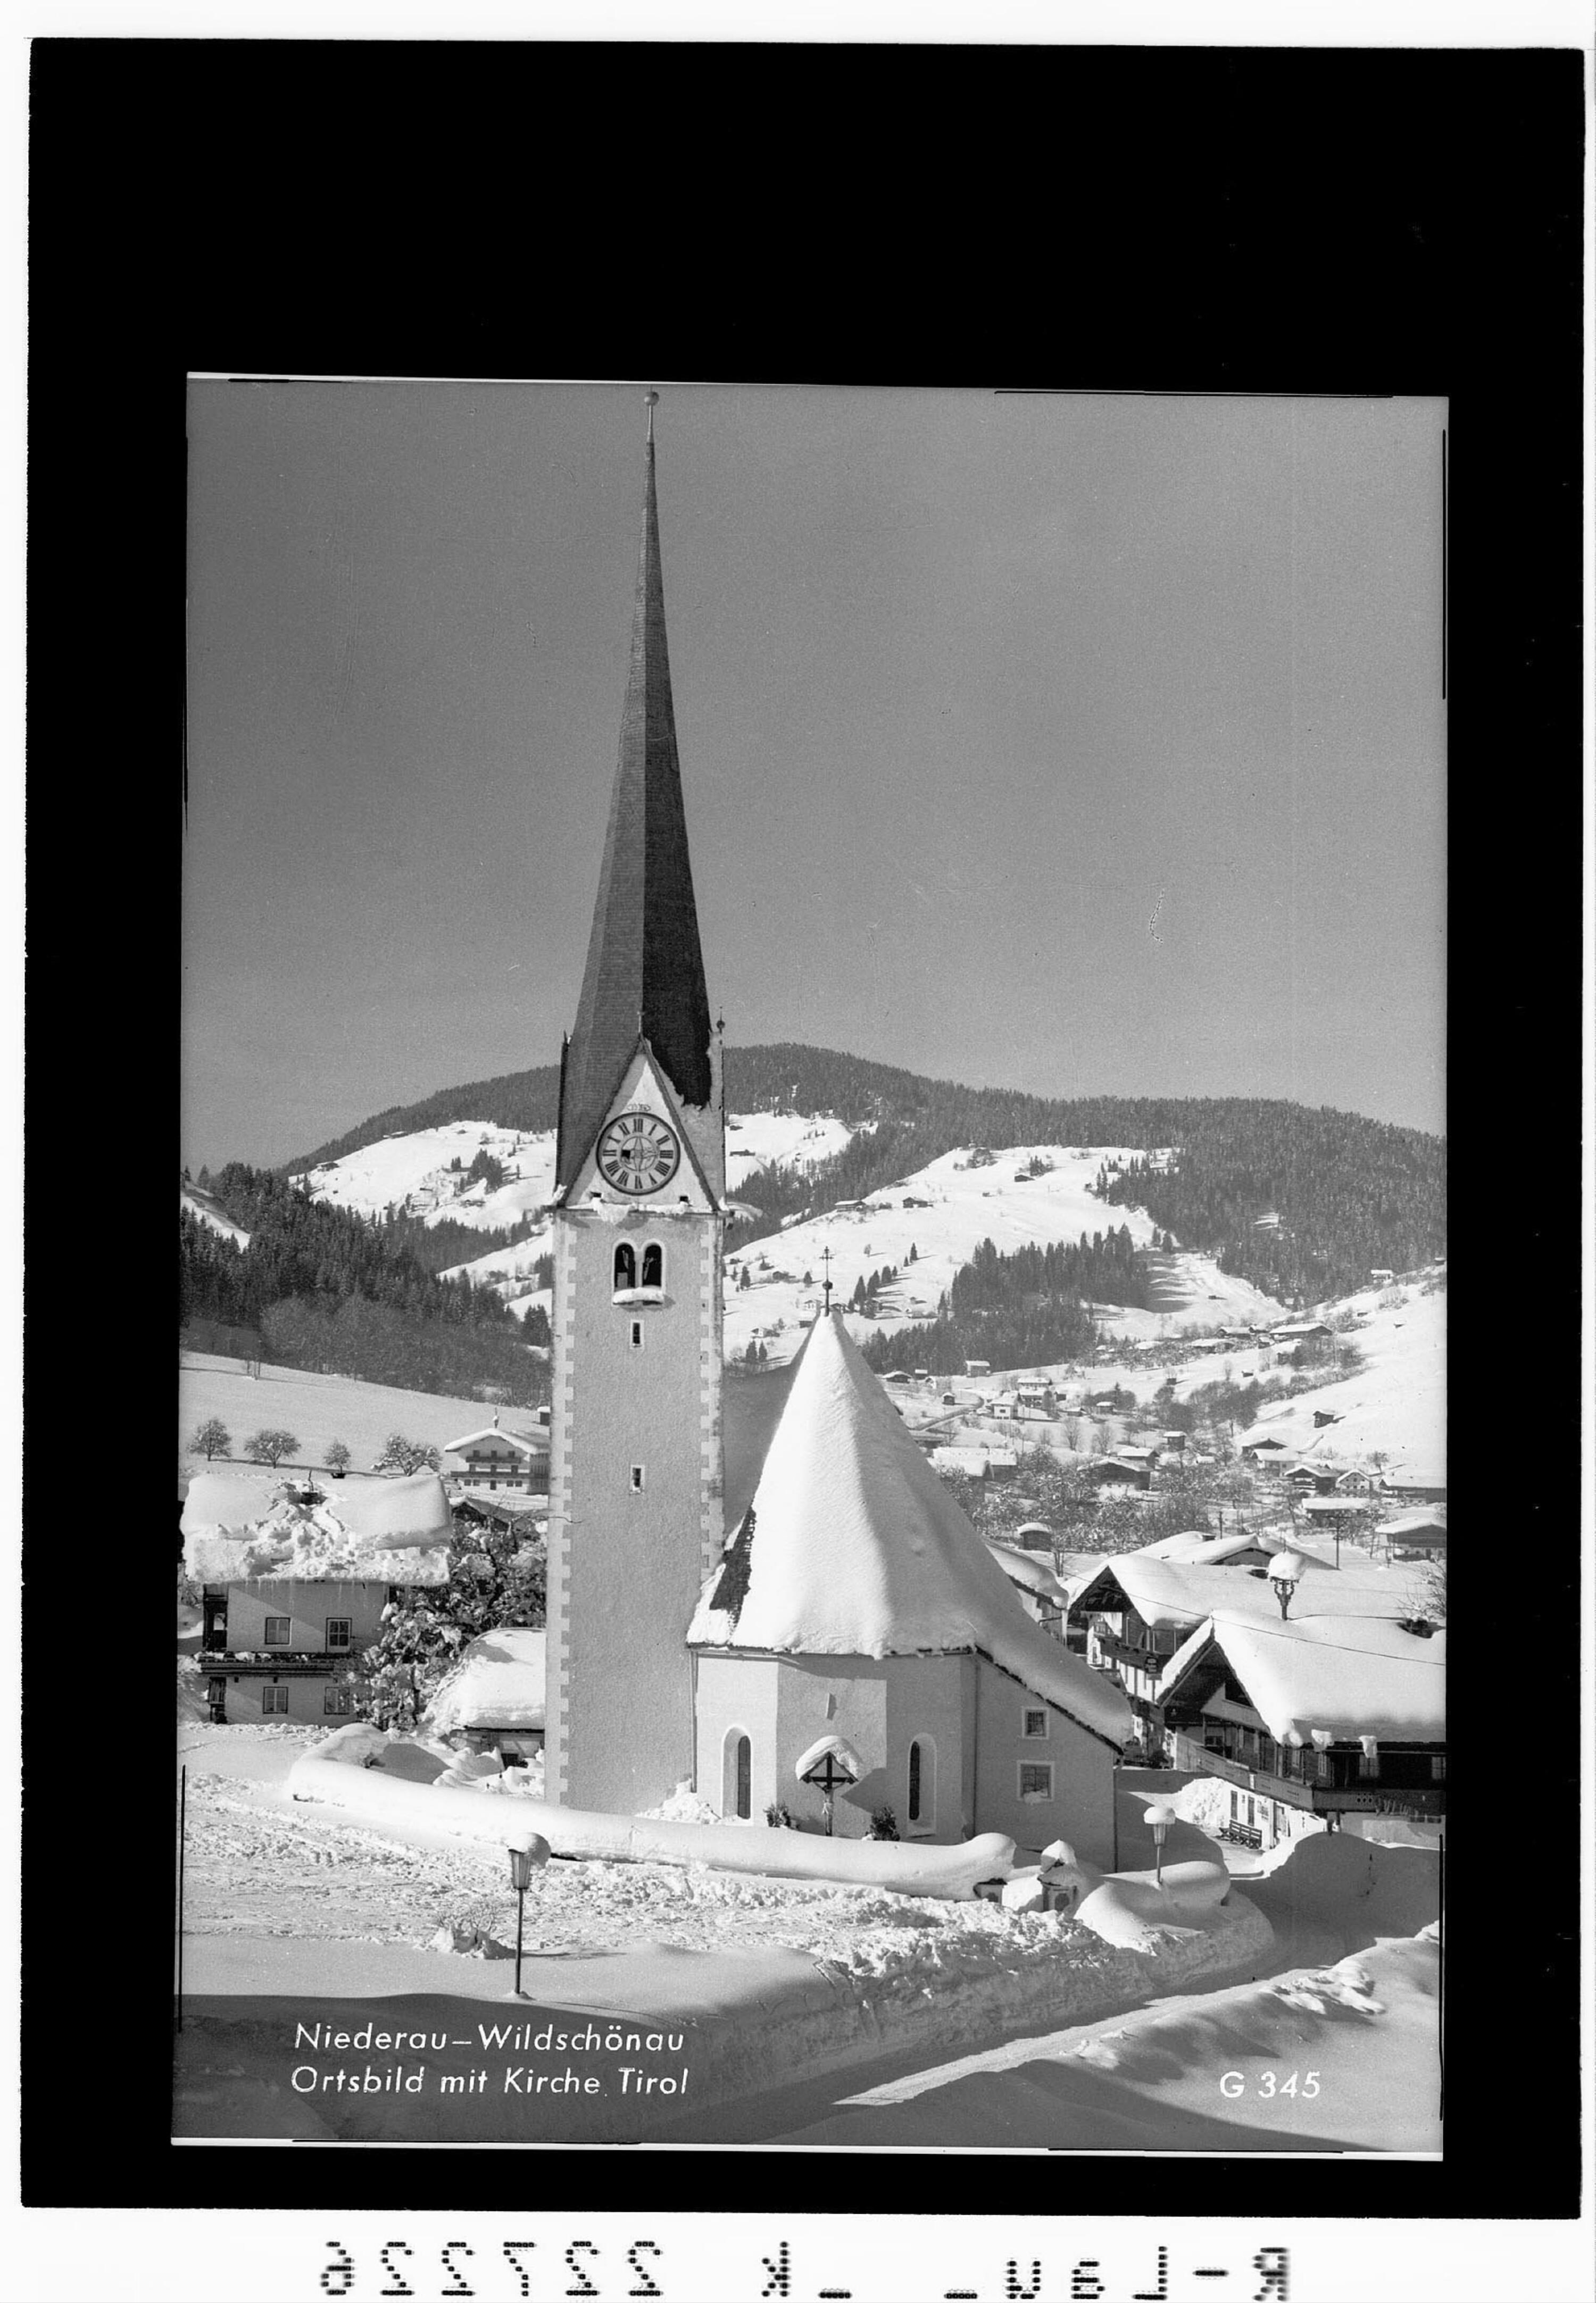 Niederau - Wildschönau / Ortsbild mit Kirche / Tirol></div>


    <hr>
    <div class=